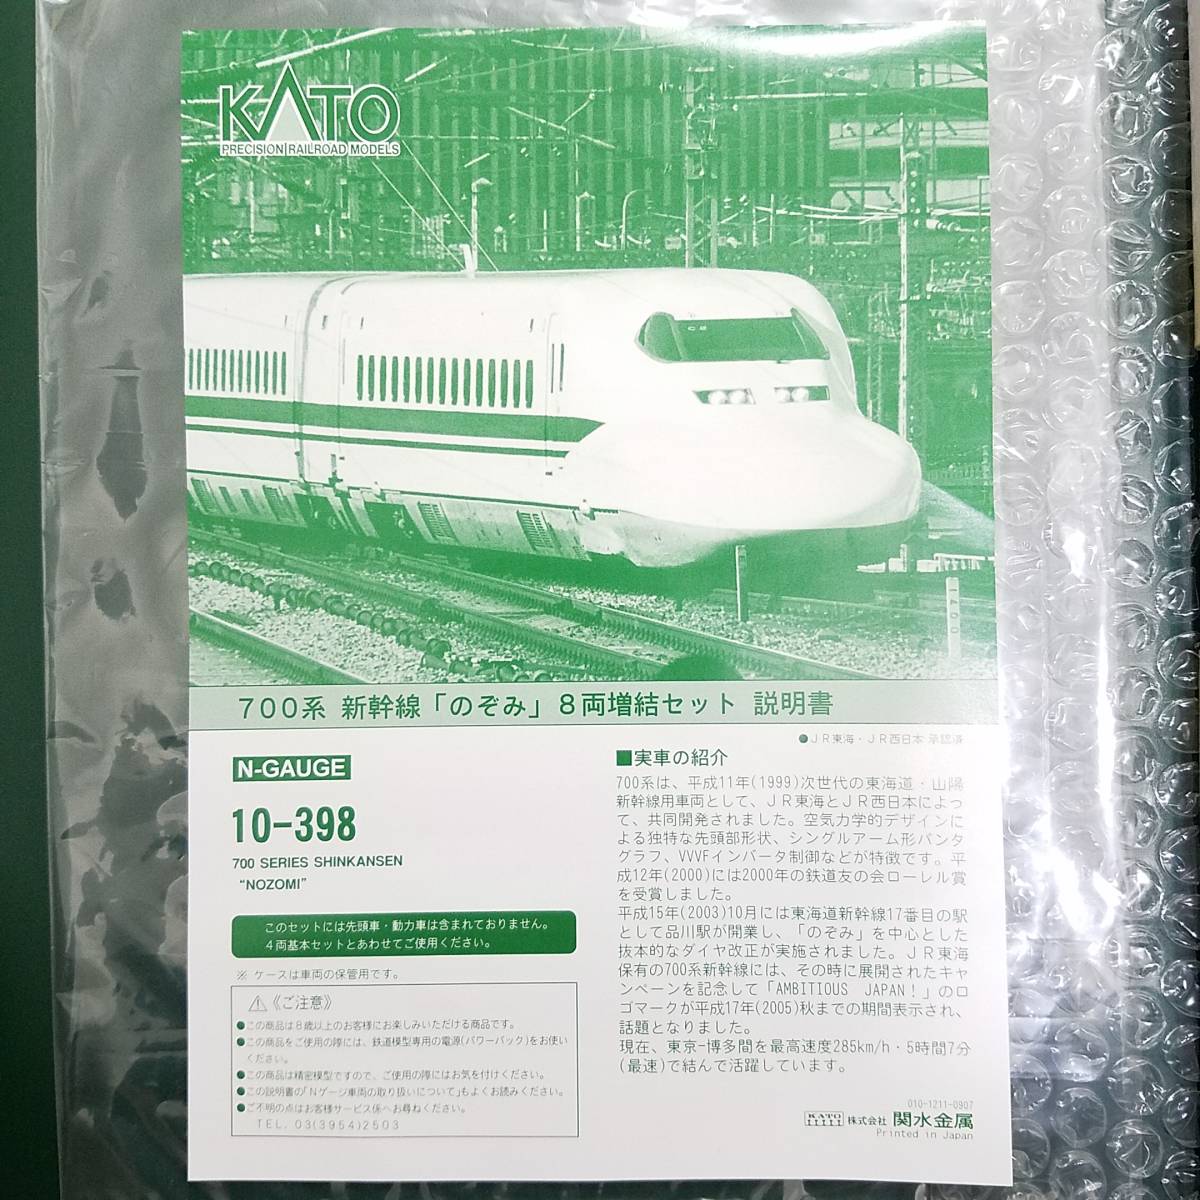  as good as new goods KATO 10-398 700 series Shinkansen [. ..] 8 both increase . set (T) Tokai road * Sanyo Shinkansen NOZOMI railroad model N gauge (T car ) Kato N-GAUGE